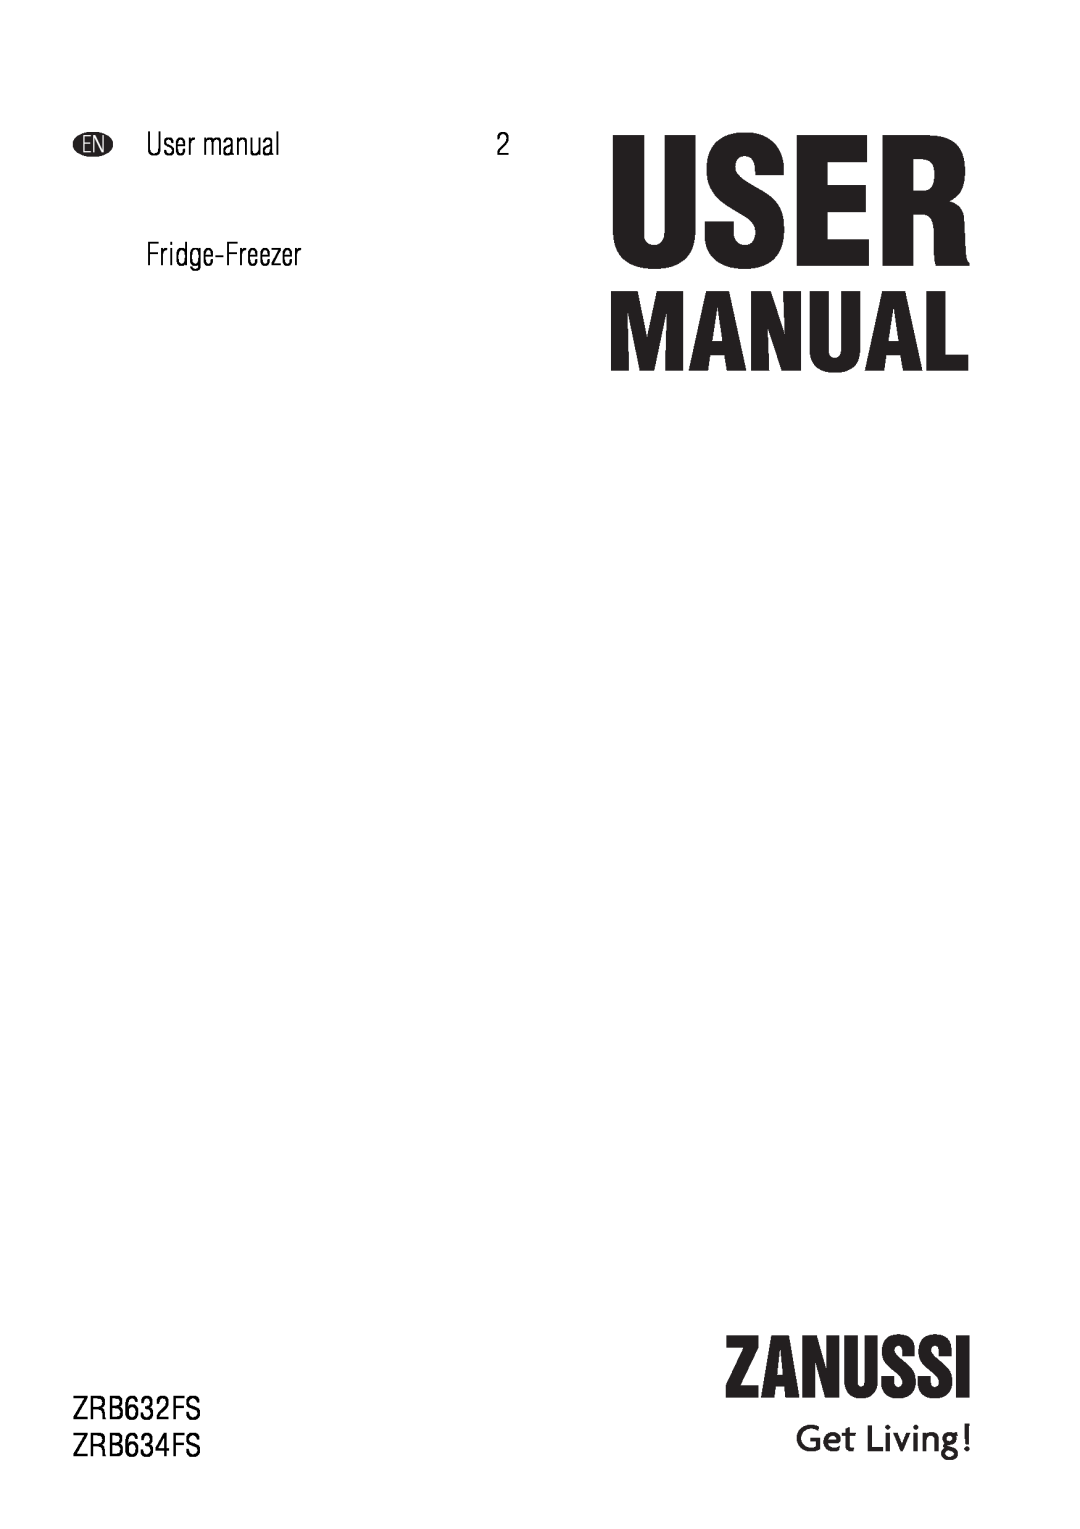 Zanussi user manual User manual, Fridge-Freezer, ZRB632FS ZRB634FS 